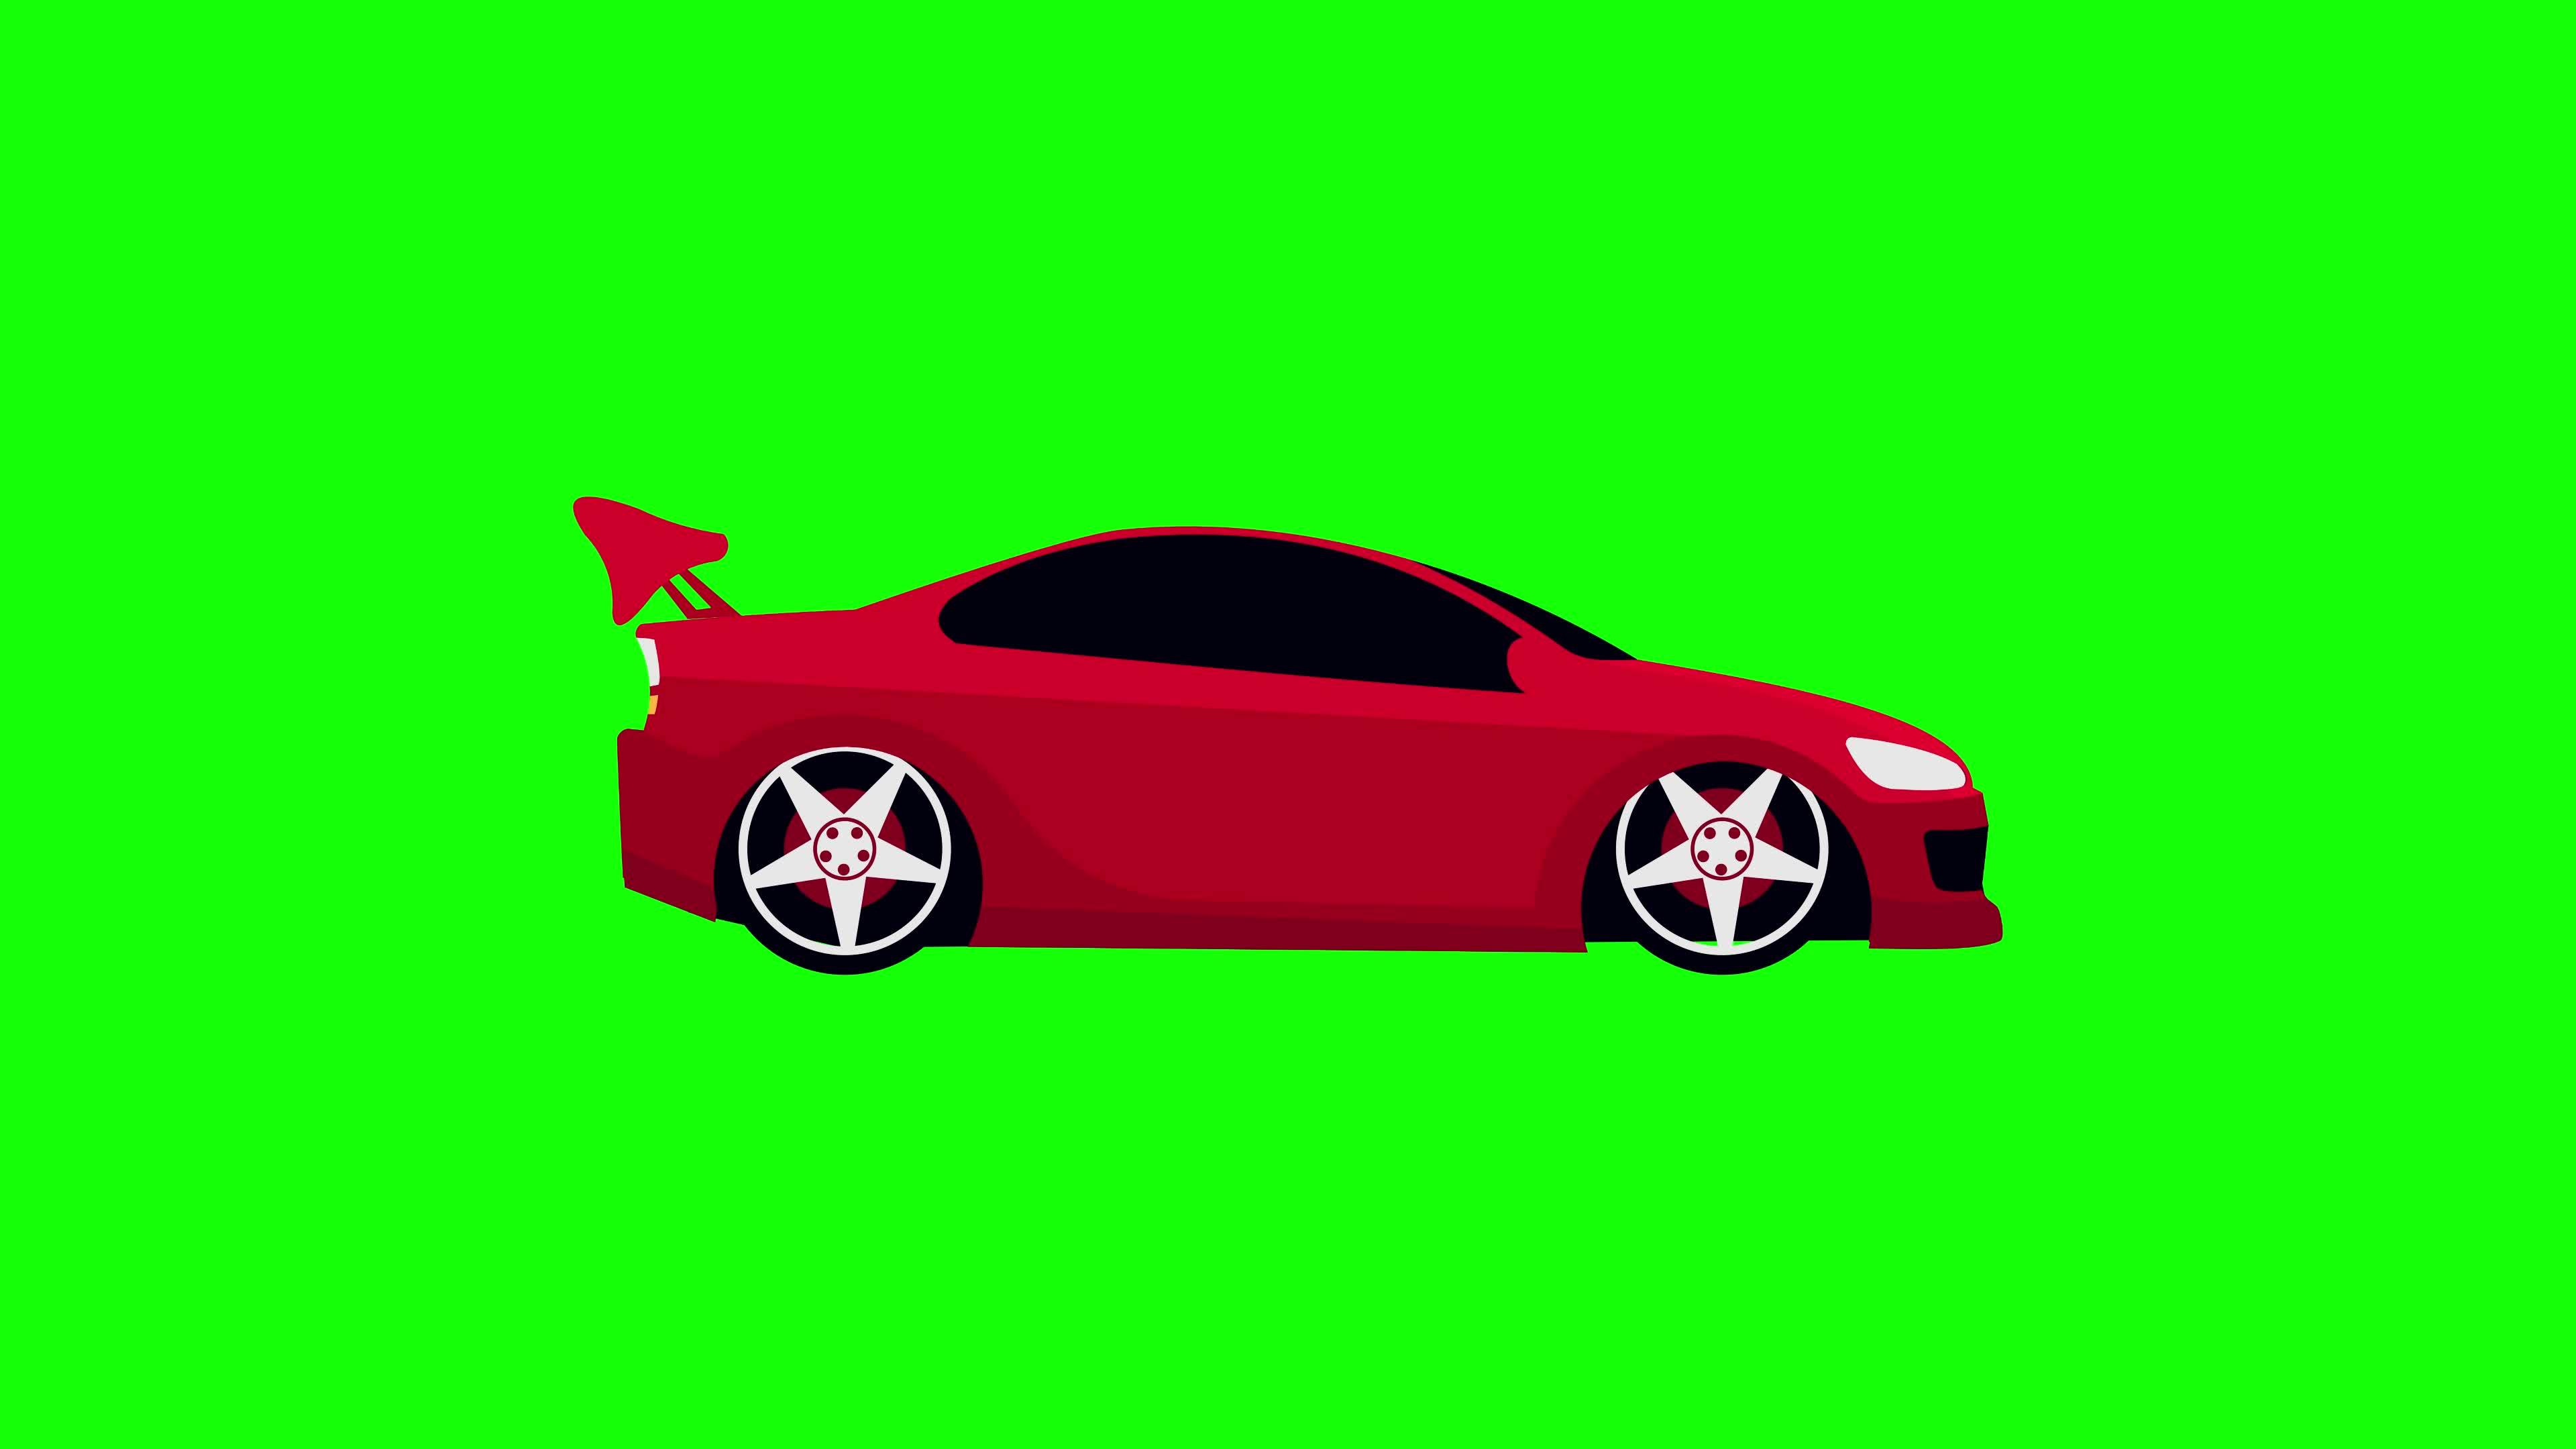 Nếu bạn muốn tạo ra một video quảng cáo hoặc máy chủ để trình diễn ý tưởng của mình về làm sao để muốn mua một chiếc xe hơi, hãy xem ngay hình ảnh liên quan đến từ khóa \